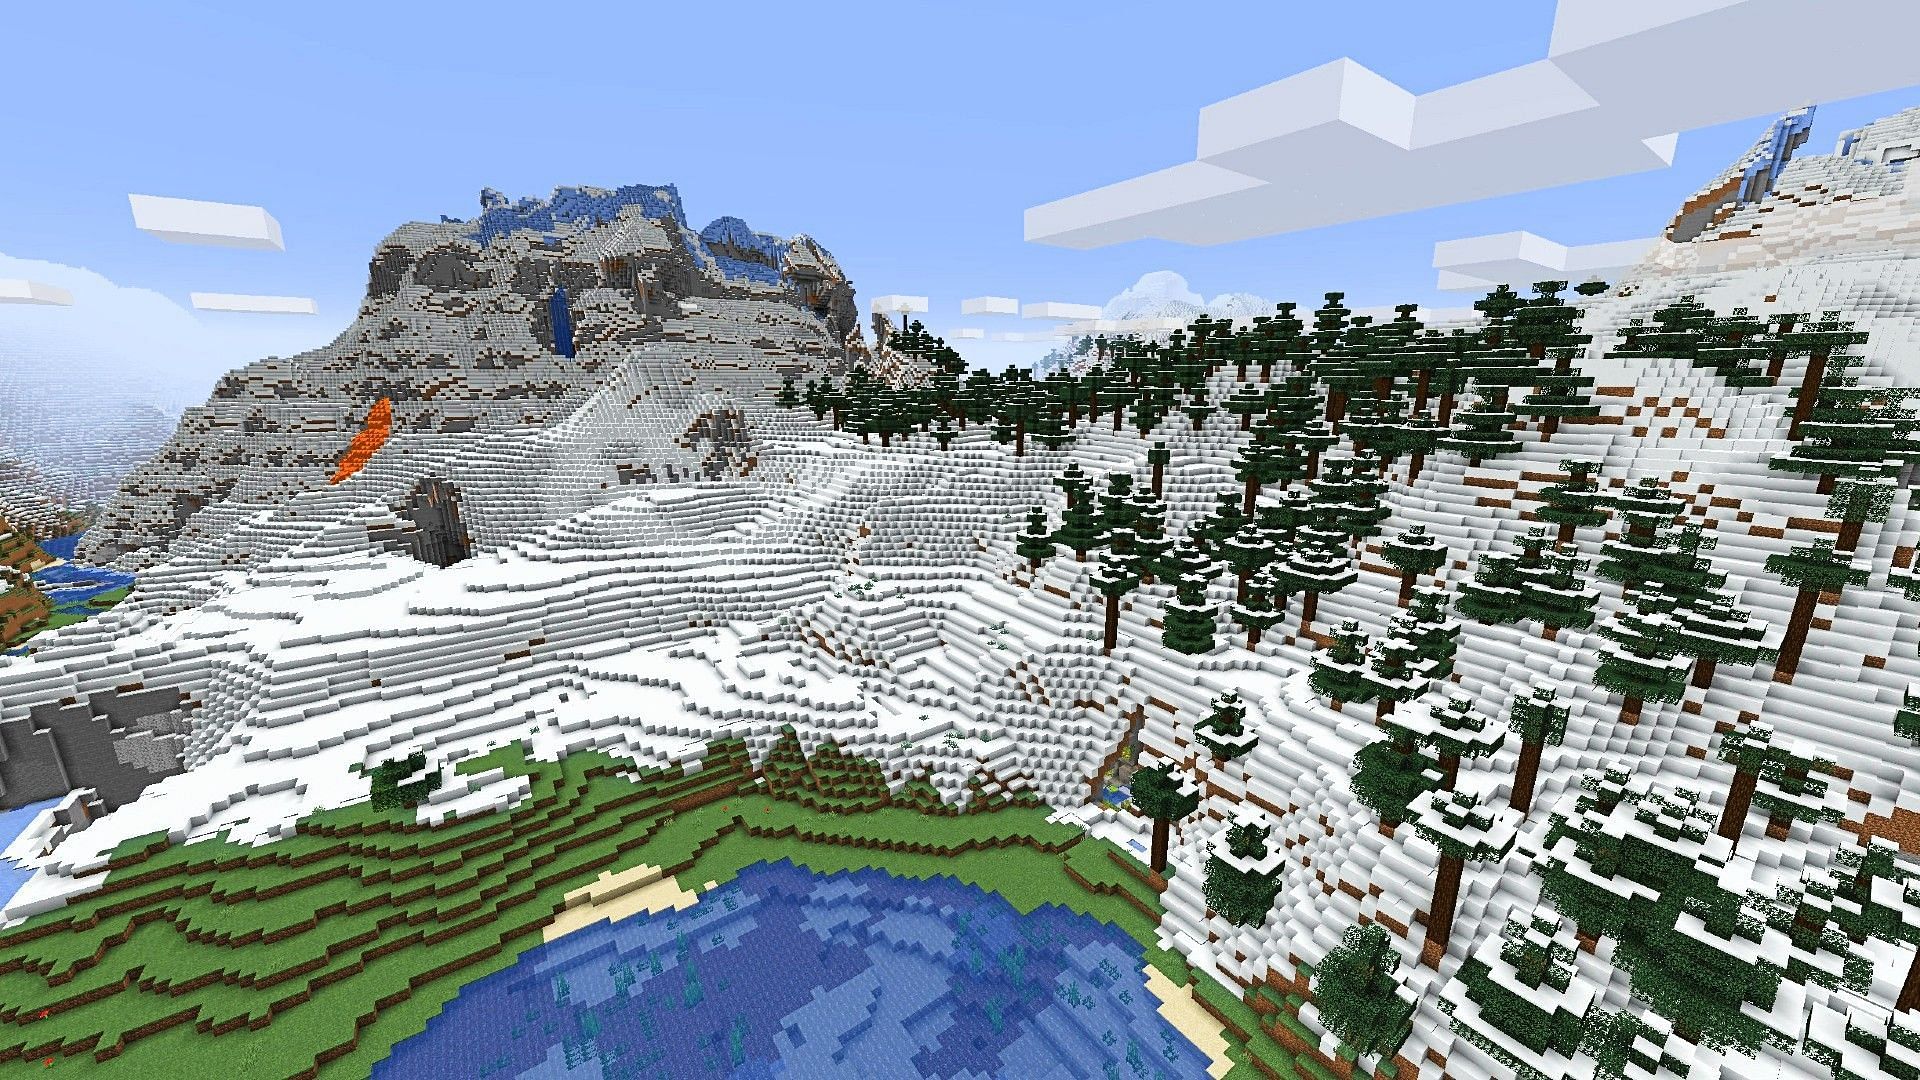 Mountains in Minecraft 1.18 (Image via Minecraft)